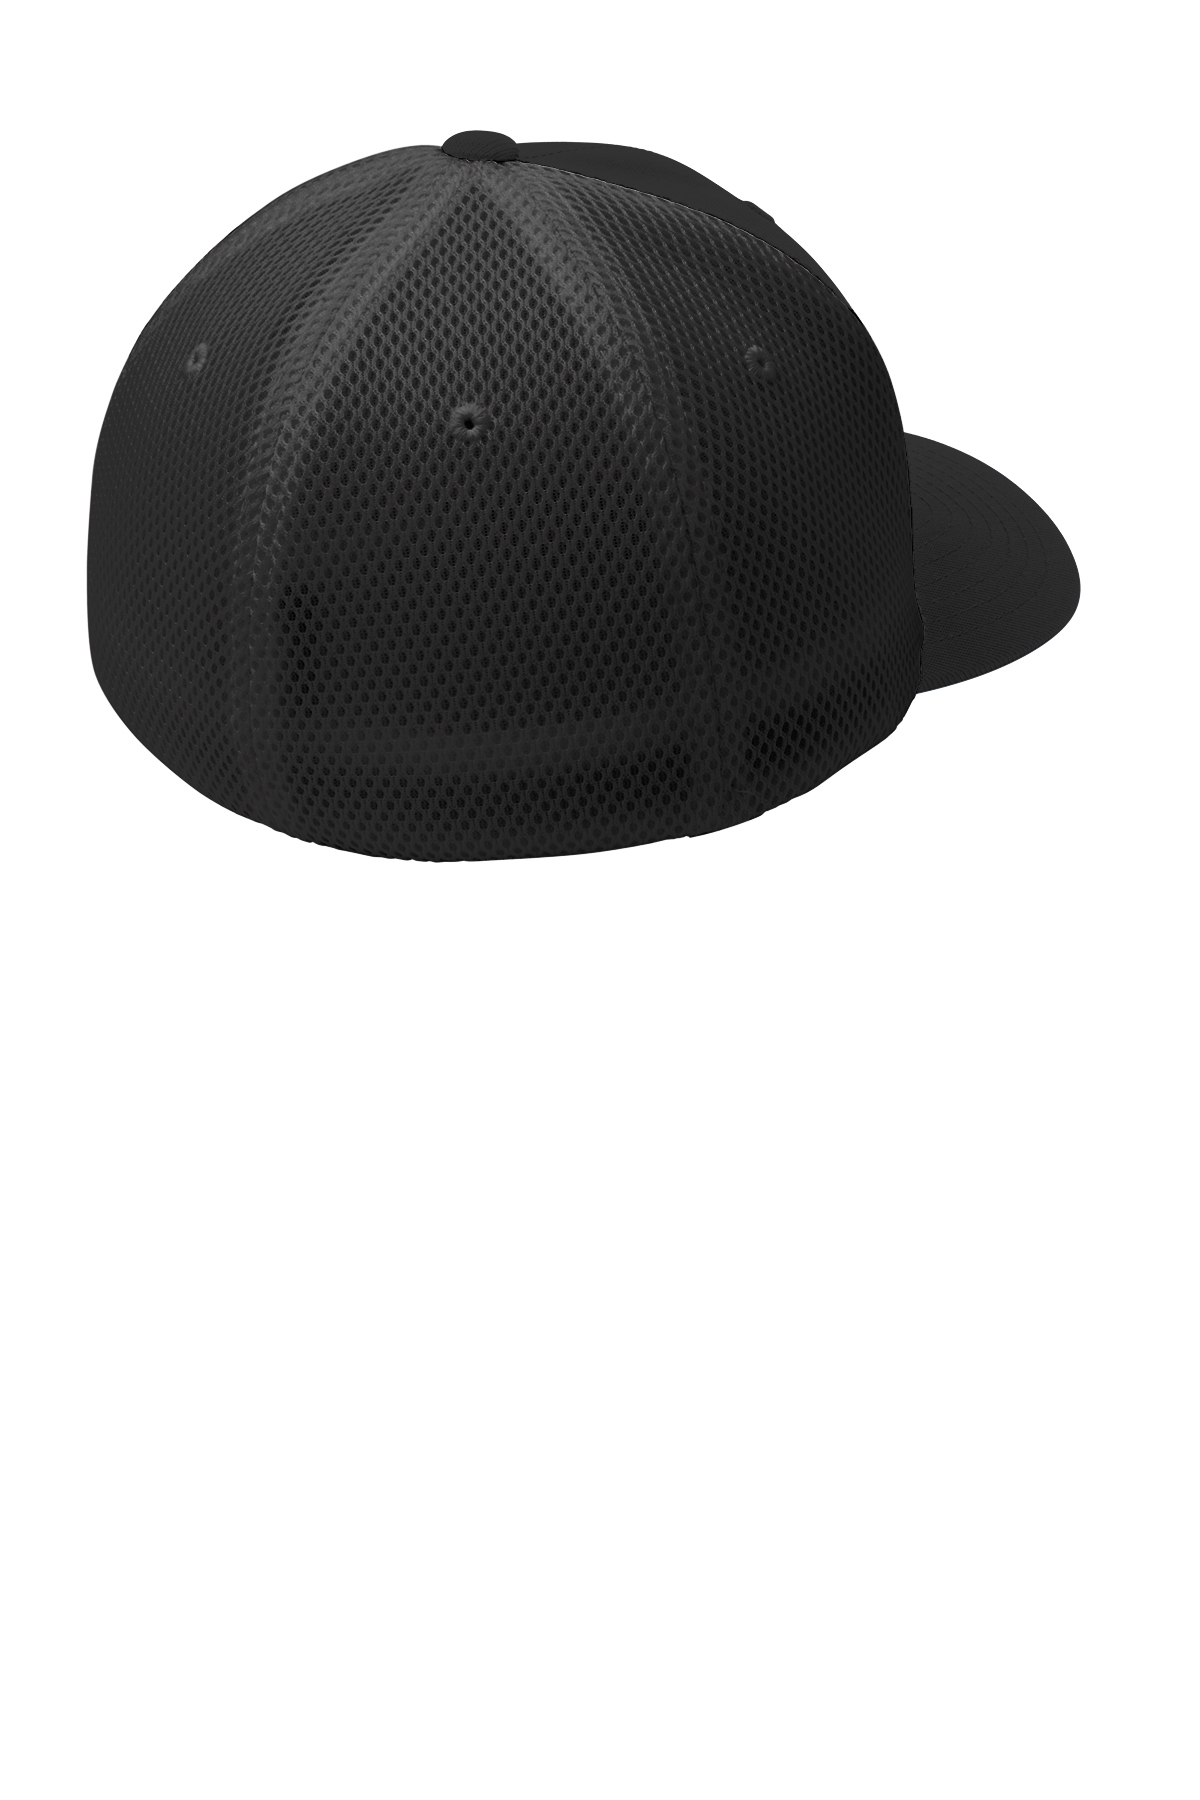 Sport-Tek Flexfit Air Mesh Back Cap | Product | Company Casuals